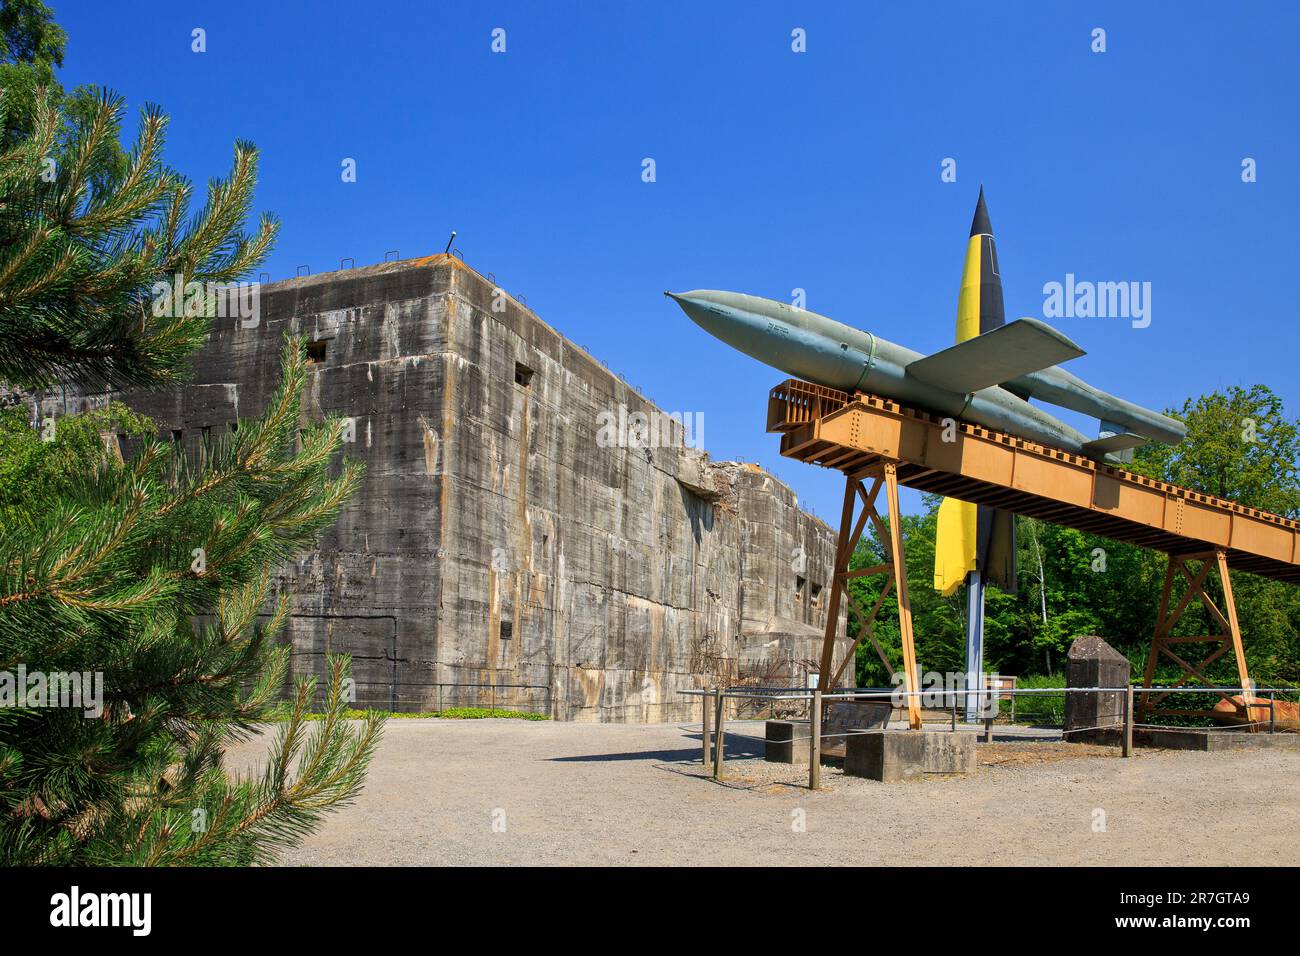 Una seconda guerra mondiale Germania nazista V-1 bomba volante e V-2 missile balistico guidato a lungo raggio al Bunker di Eperlecques (Pas-de-Calais), Francia Foto Stock